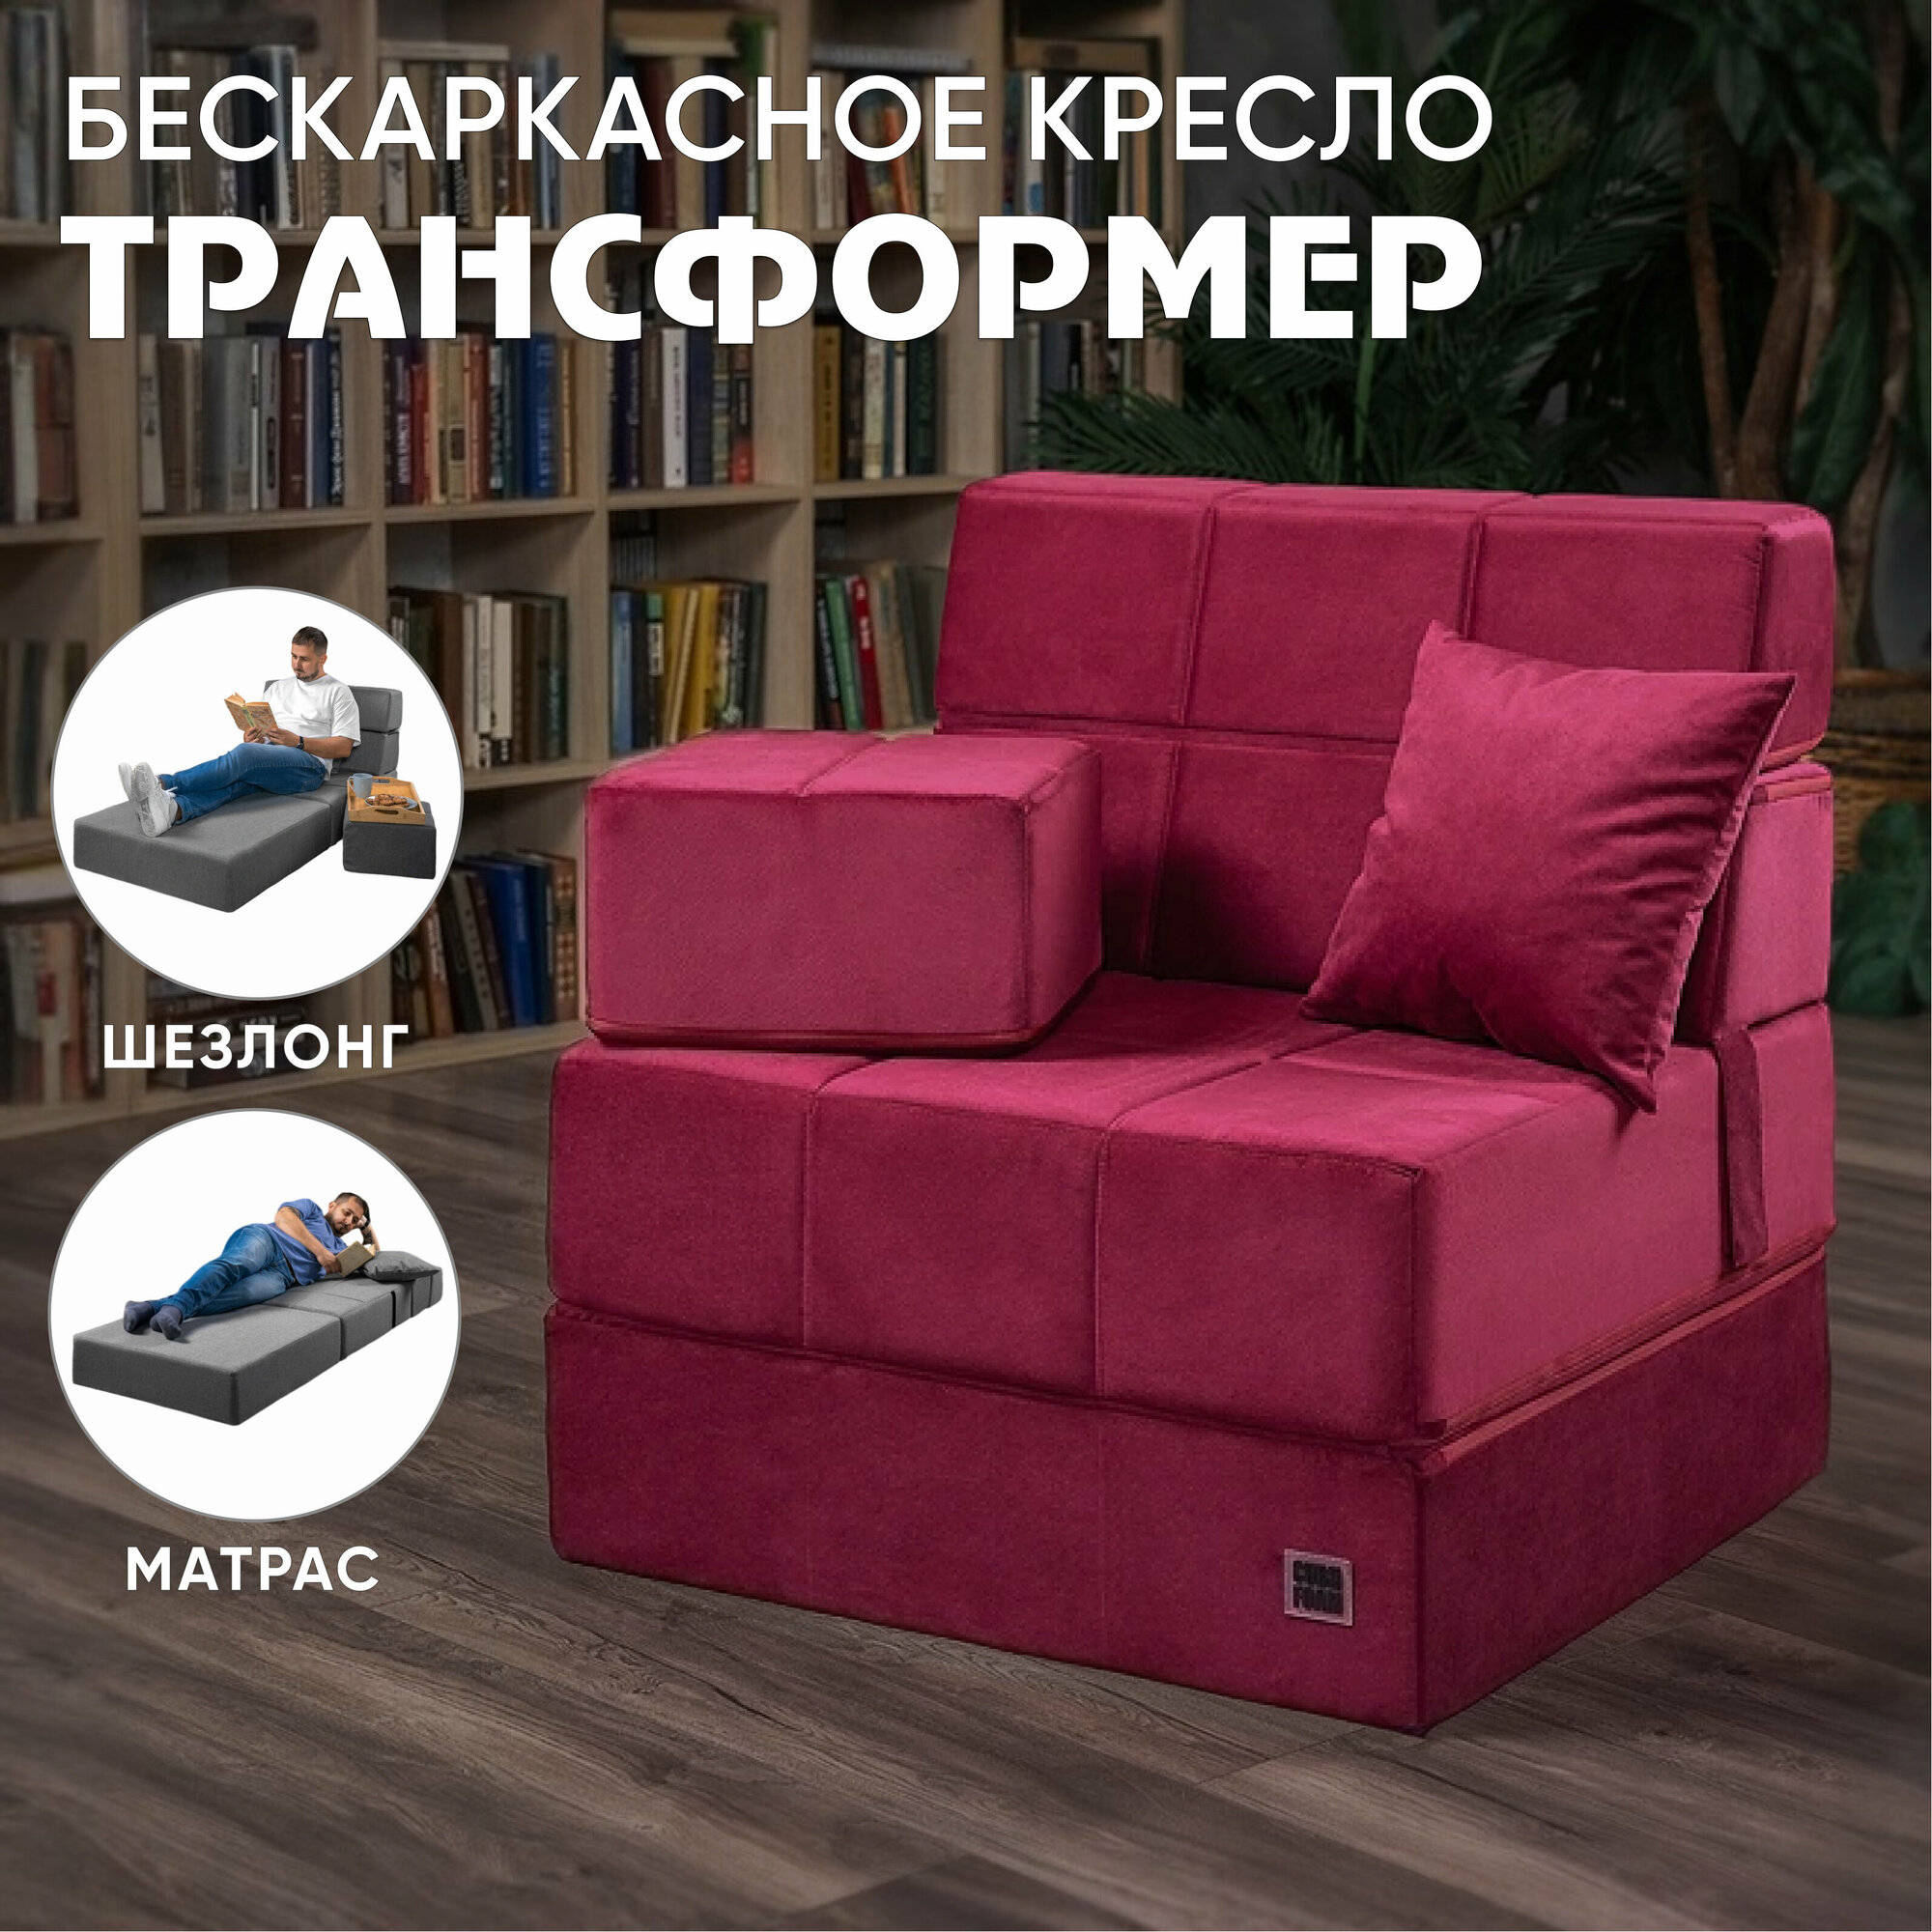 Бескаркасный бордовый диван MaxiCubes